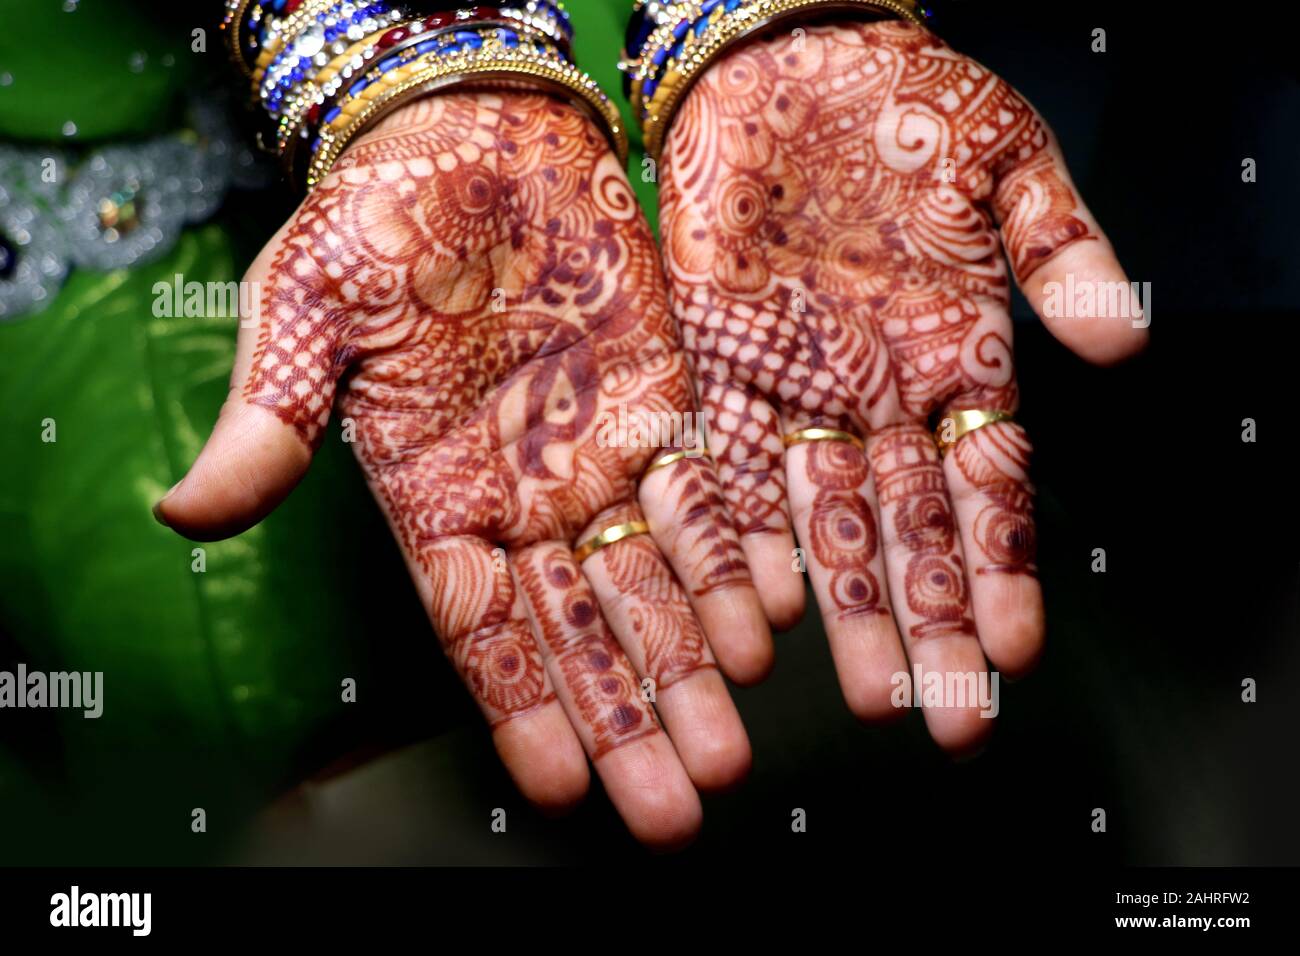 Arte in ragazze mano utilizzando henna impianto anche chiamato come mehndi design,style.it è una tradizione in India. Foto Stock